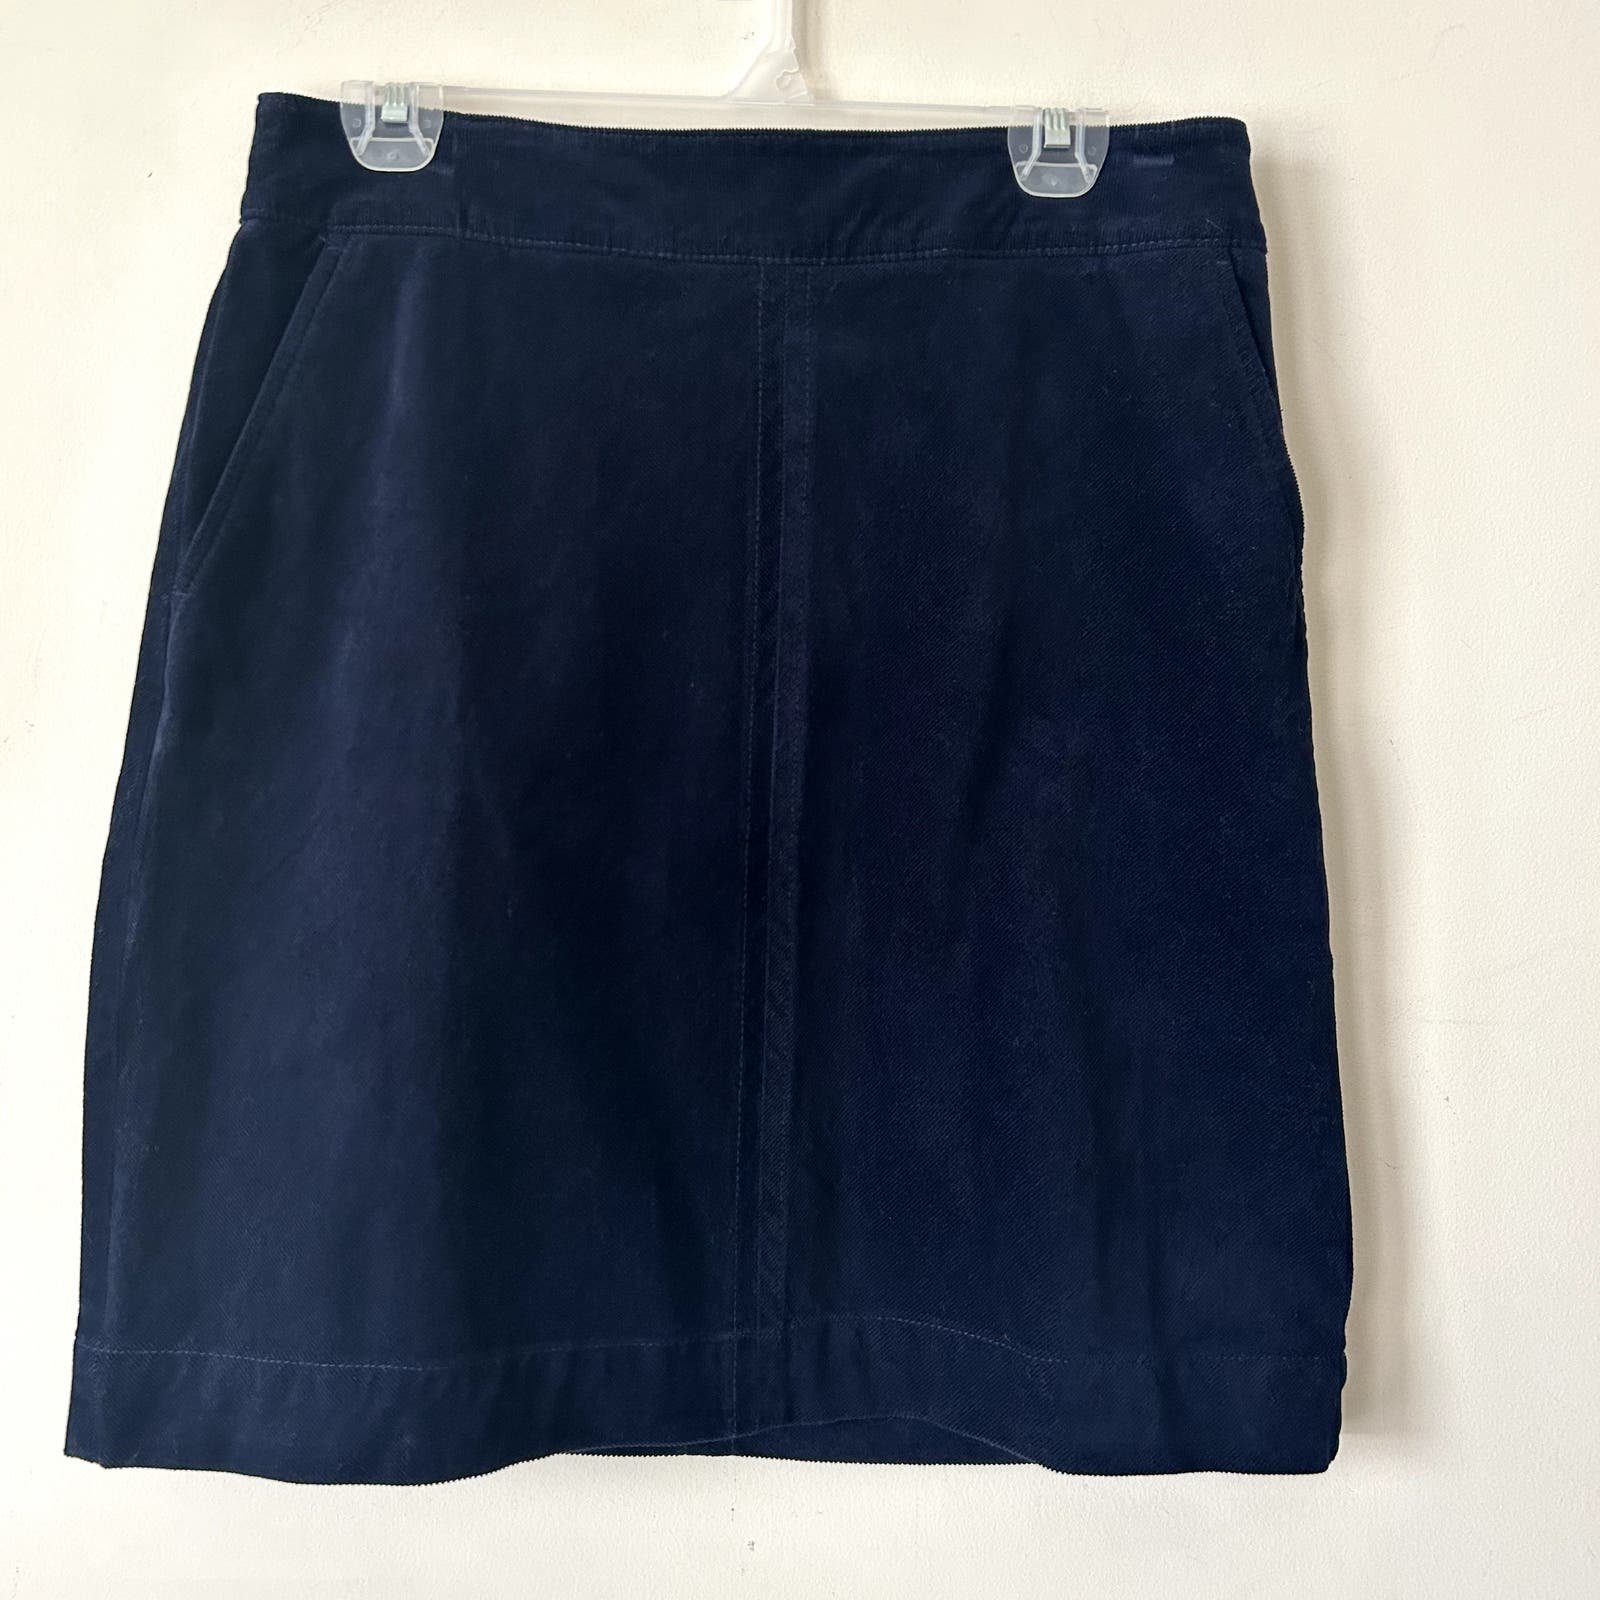 Wholesale price Talbots Corduroy Skirt Size 8 NWT Navy 